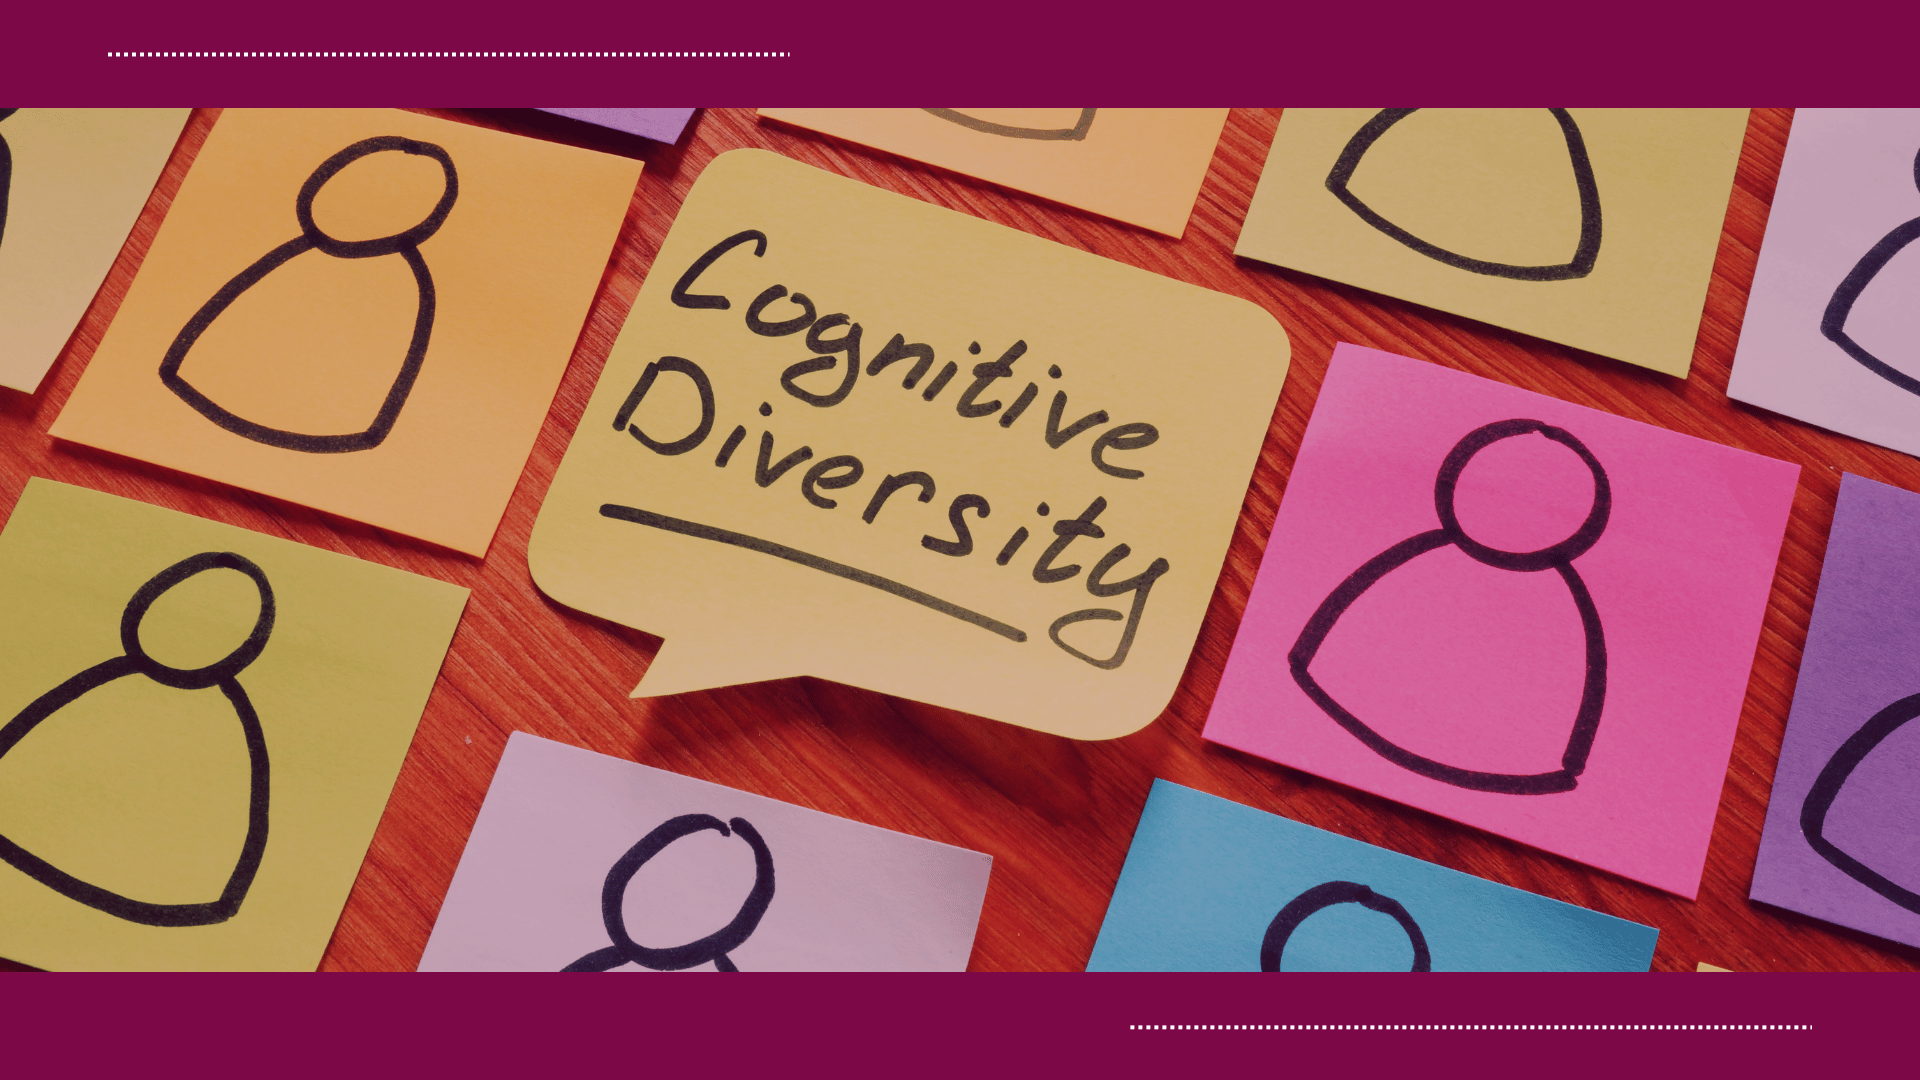 cognitive diversity